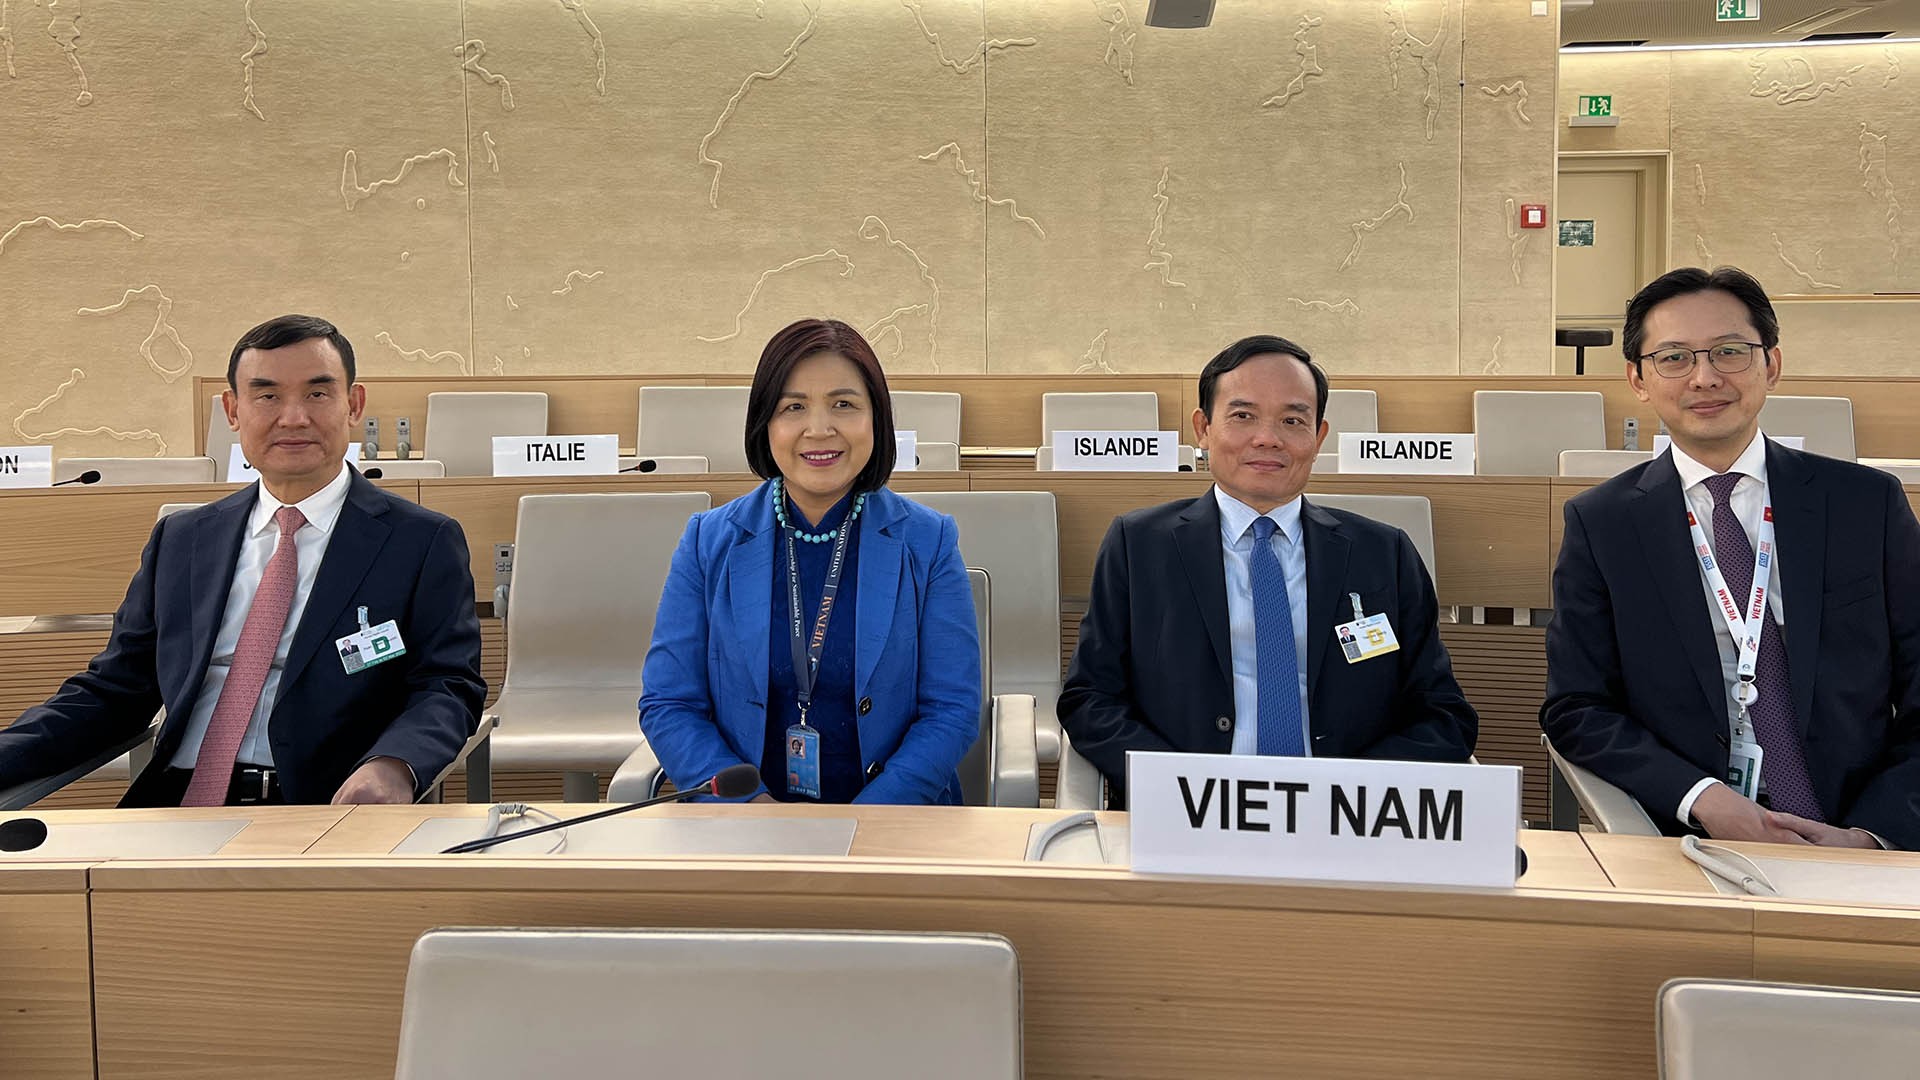 Đoàn Việt Nam chuẩn bị tham dự khai mạc Phiên họp cấp cao khóa 52 Hội đồng Nhân quyền LHQ.